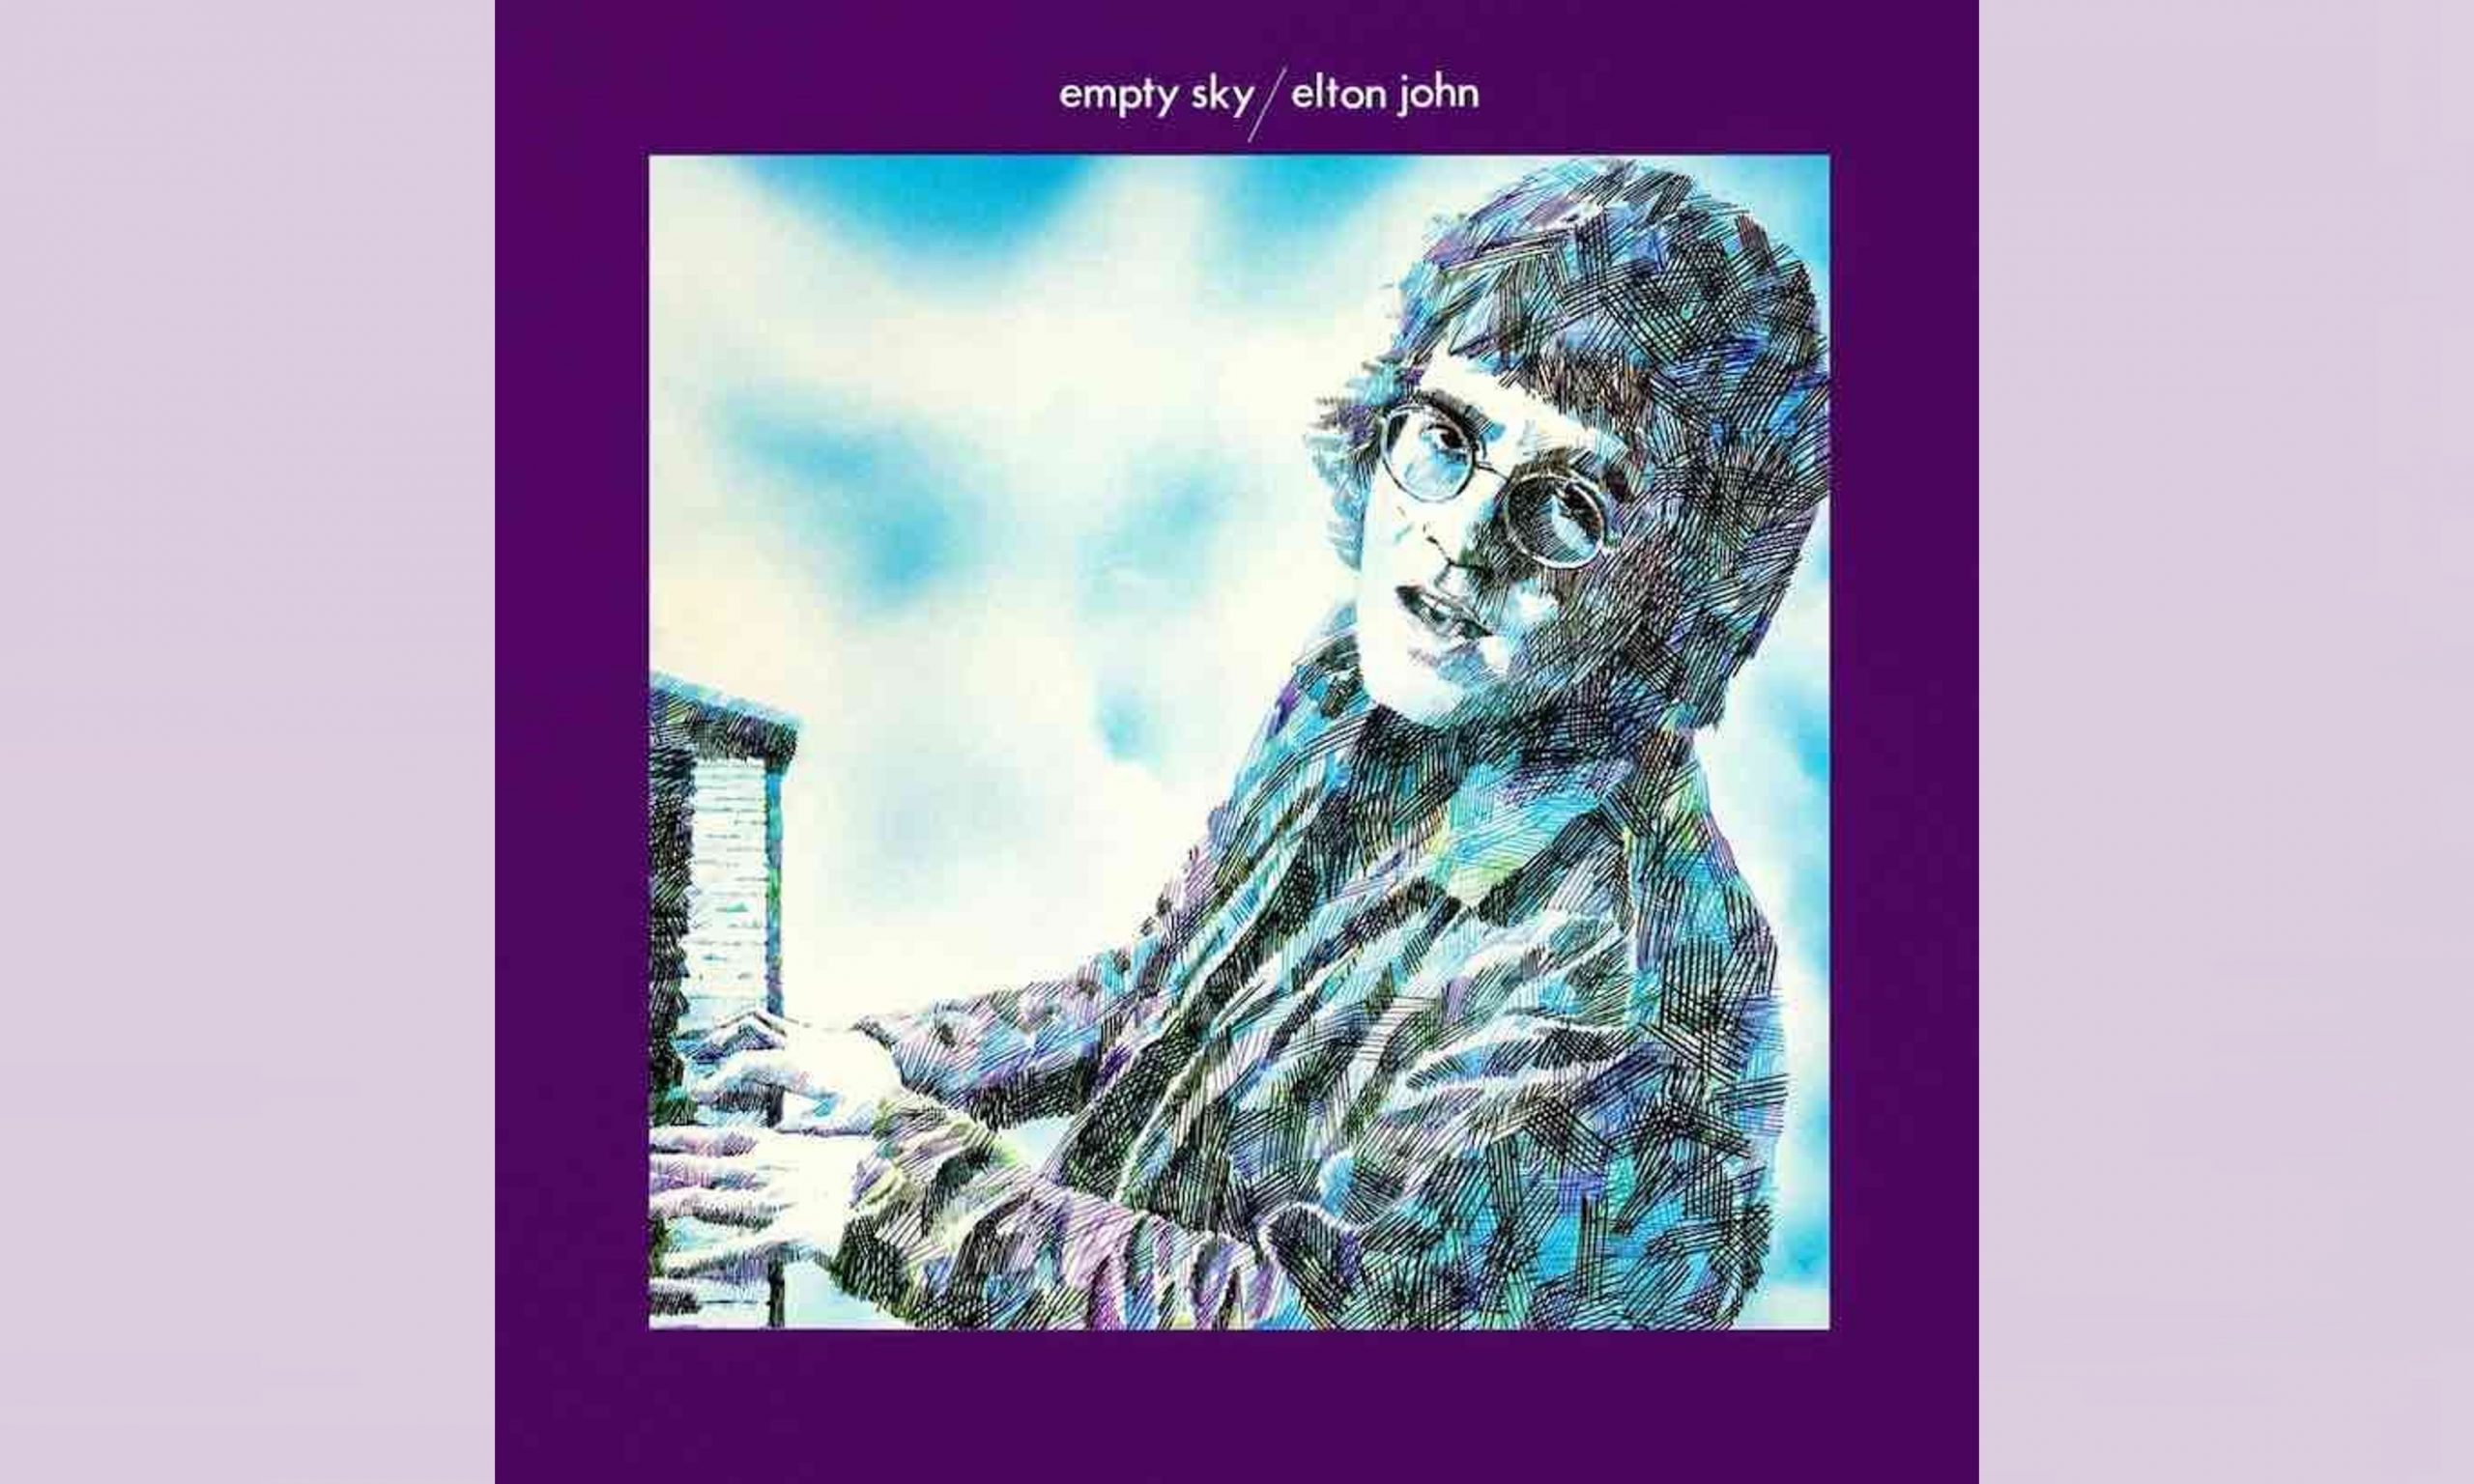 エルトン・ジョン『Empty Sky/エルトン・ジョンの肖像』解説